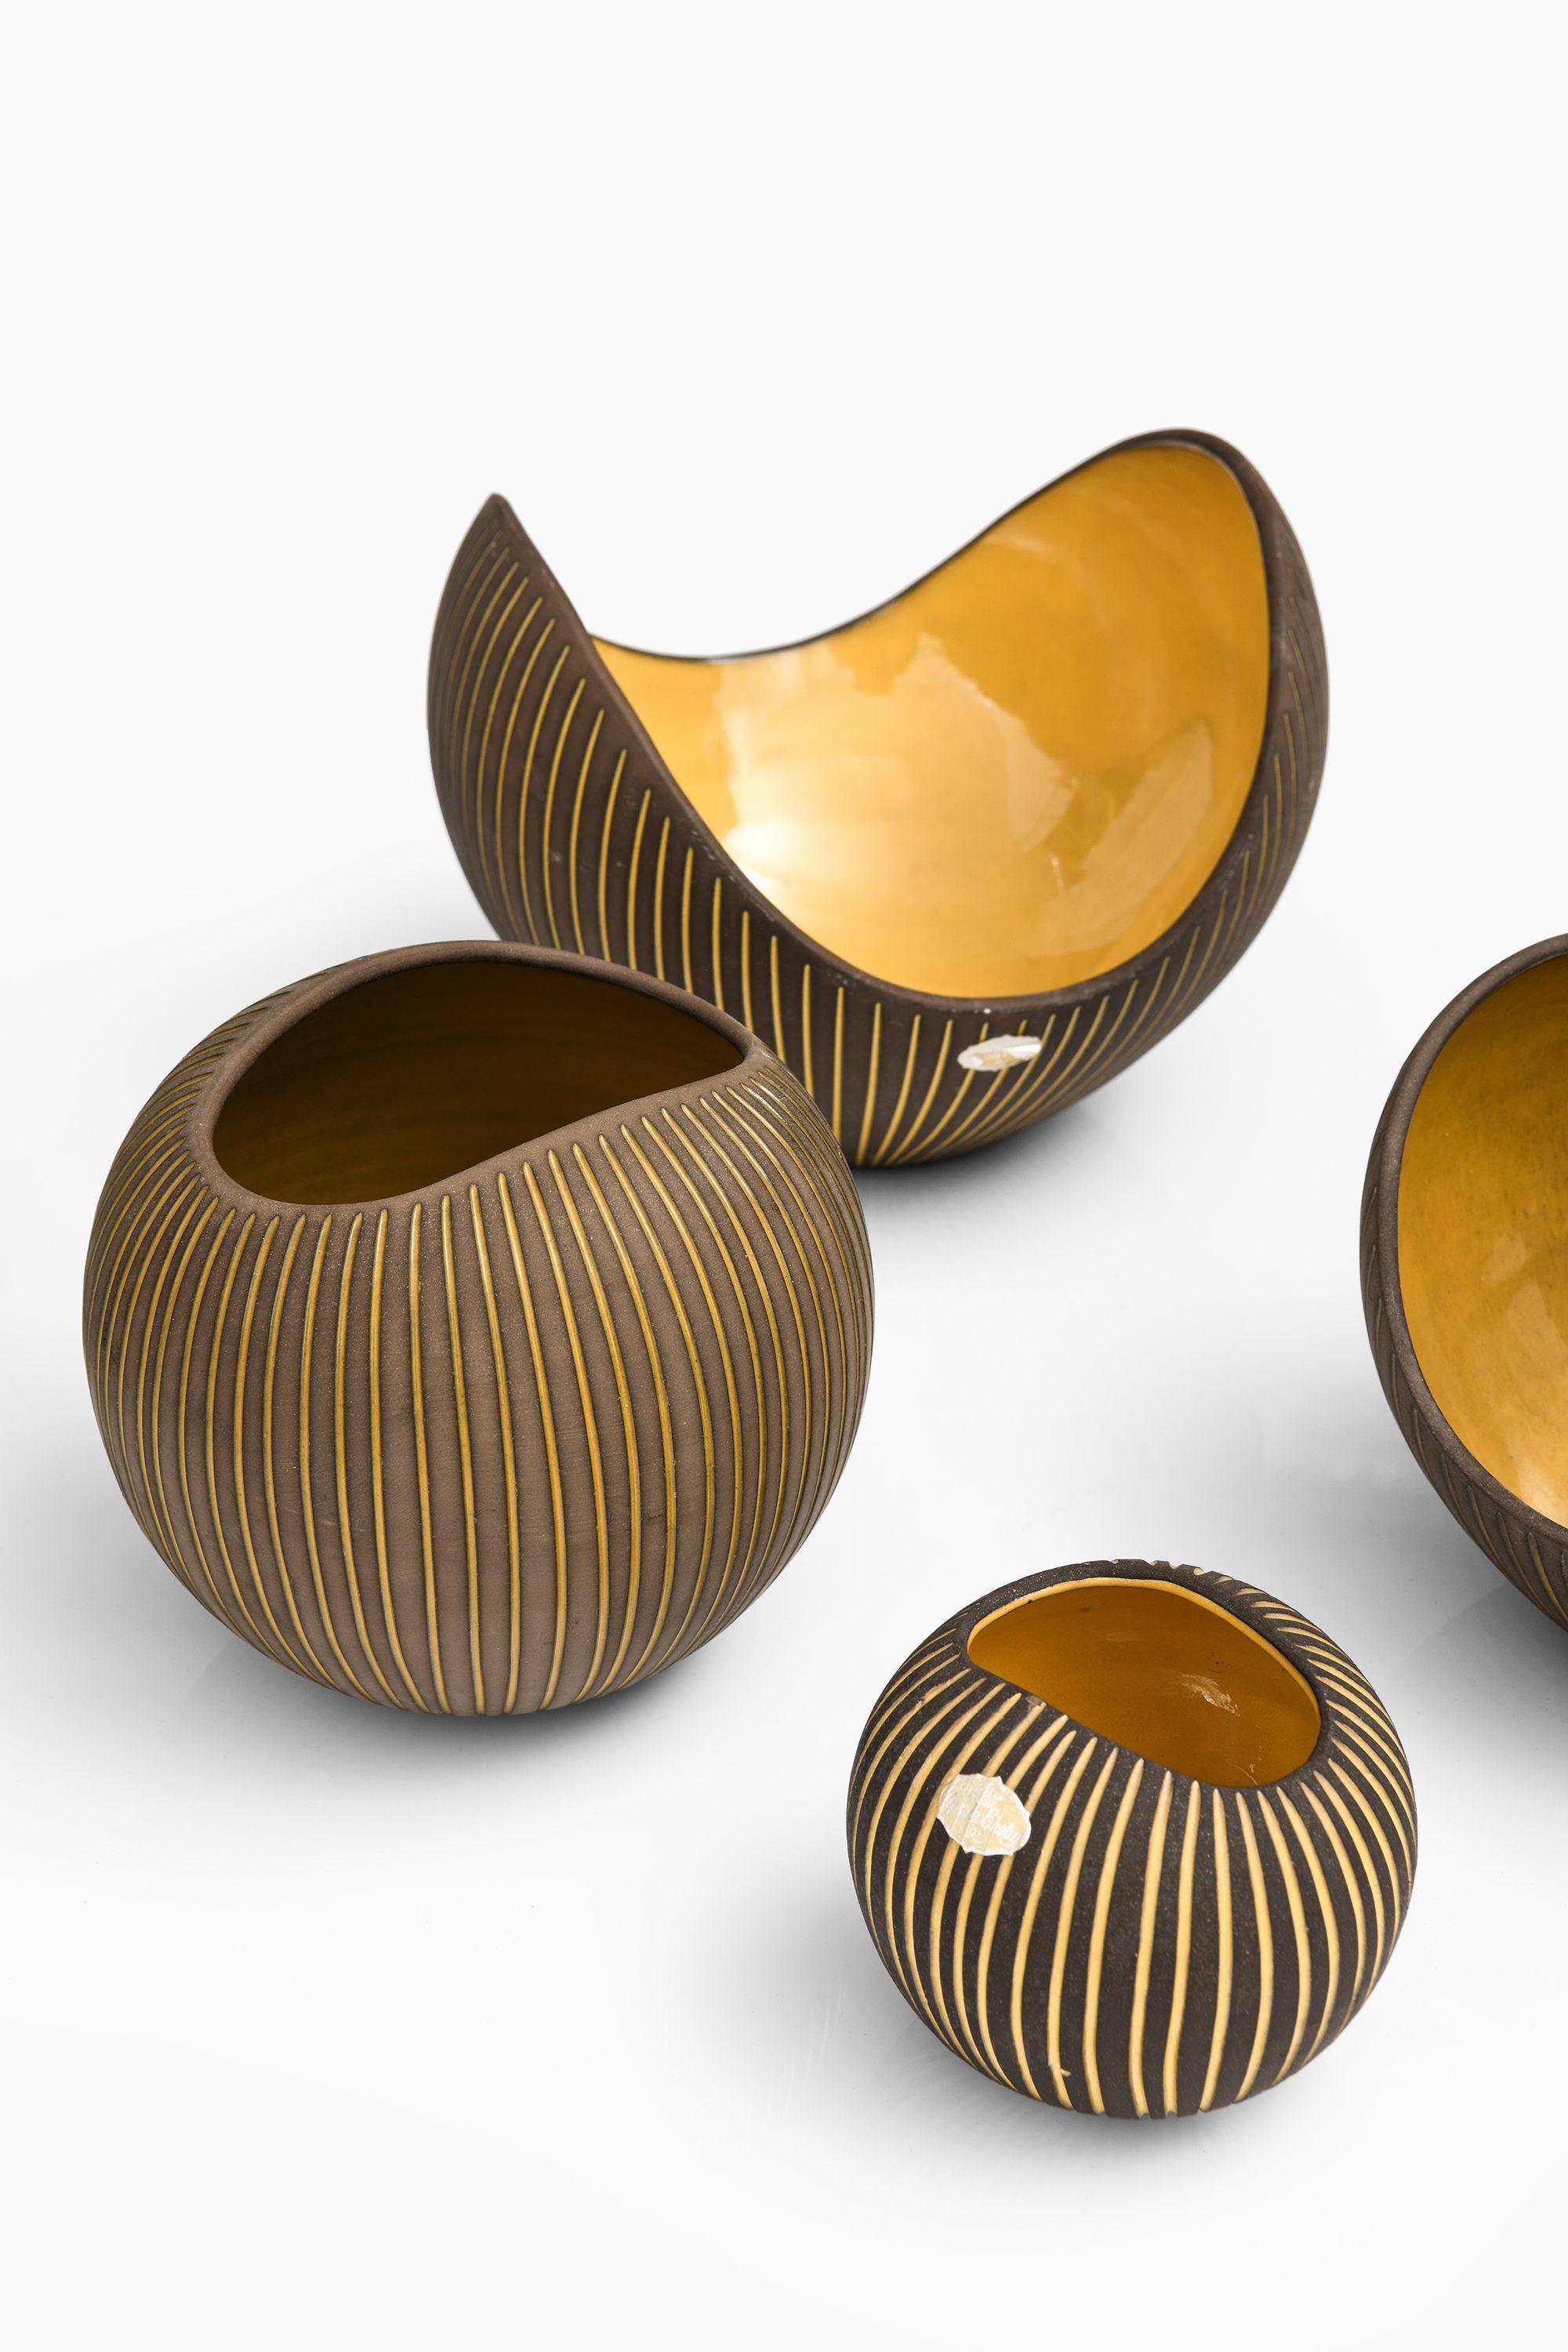 Swedish Set of 5 Ceramic Bowls by Hjördis Oldfors, 1950's For Sale